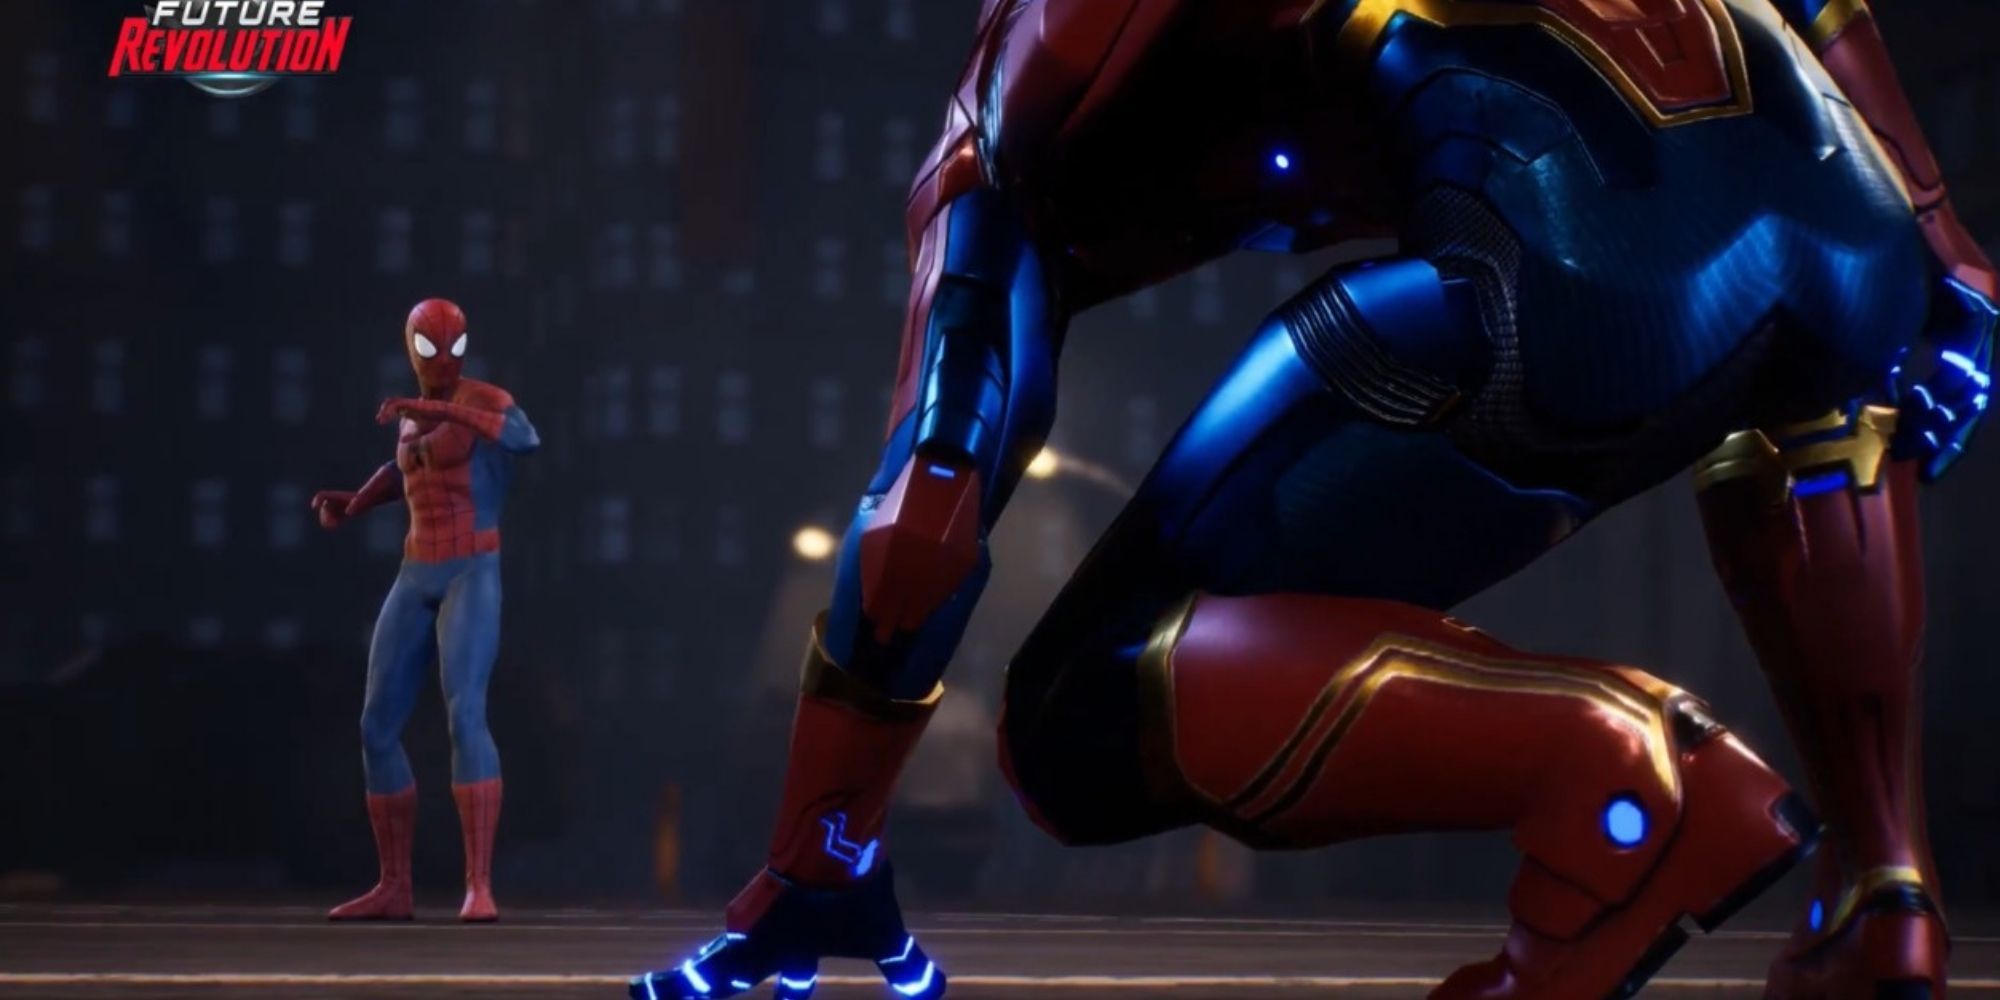 Still of Spider-Man and Captain Marvel from Marvel Future Revolution.